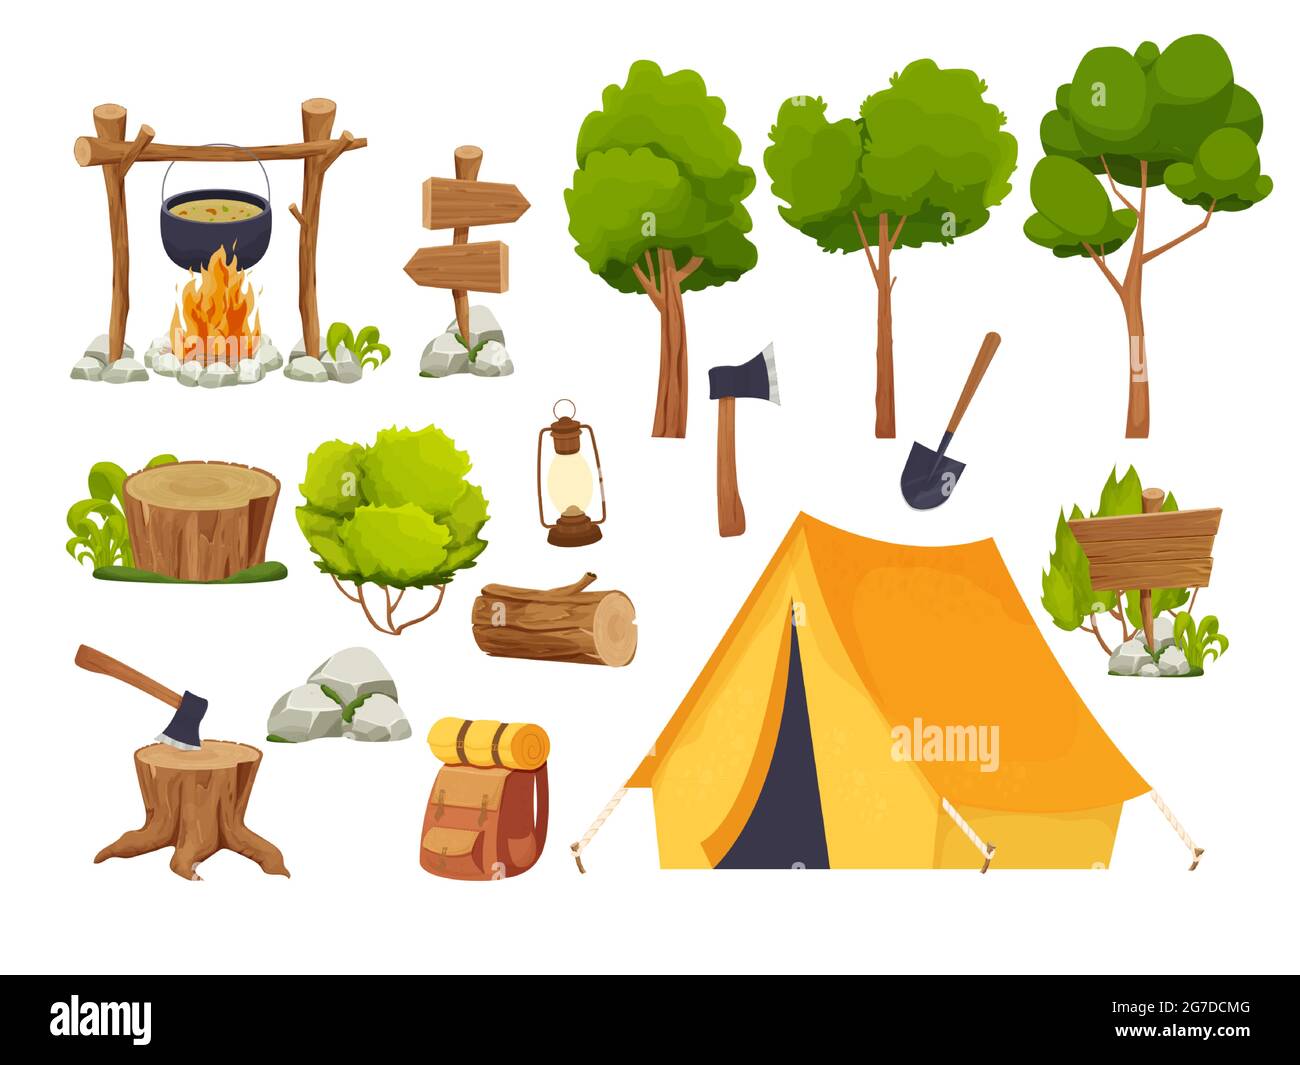 Set equipo de camping fogata, tienda, linterna, pala y hacha, mochila de  viaje madera log y tocón, árboles forestales en estilo de dibujos animados  aislados sobre fondo blanco. Actividad forestal, vacaciones. Ilustración